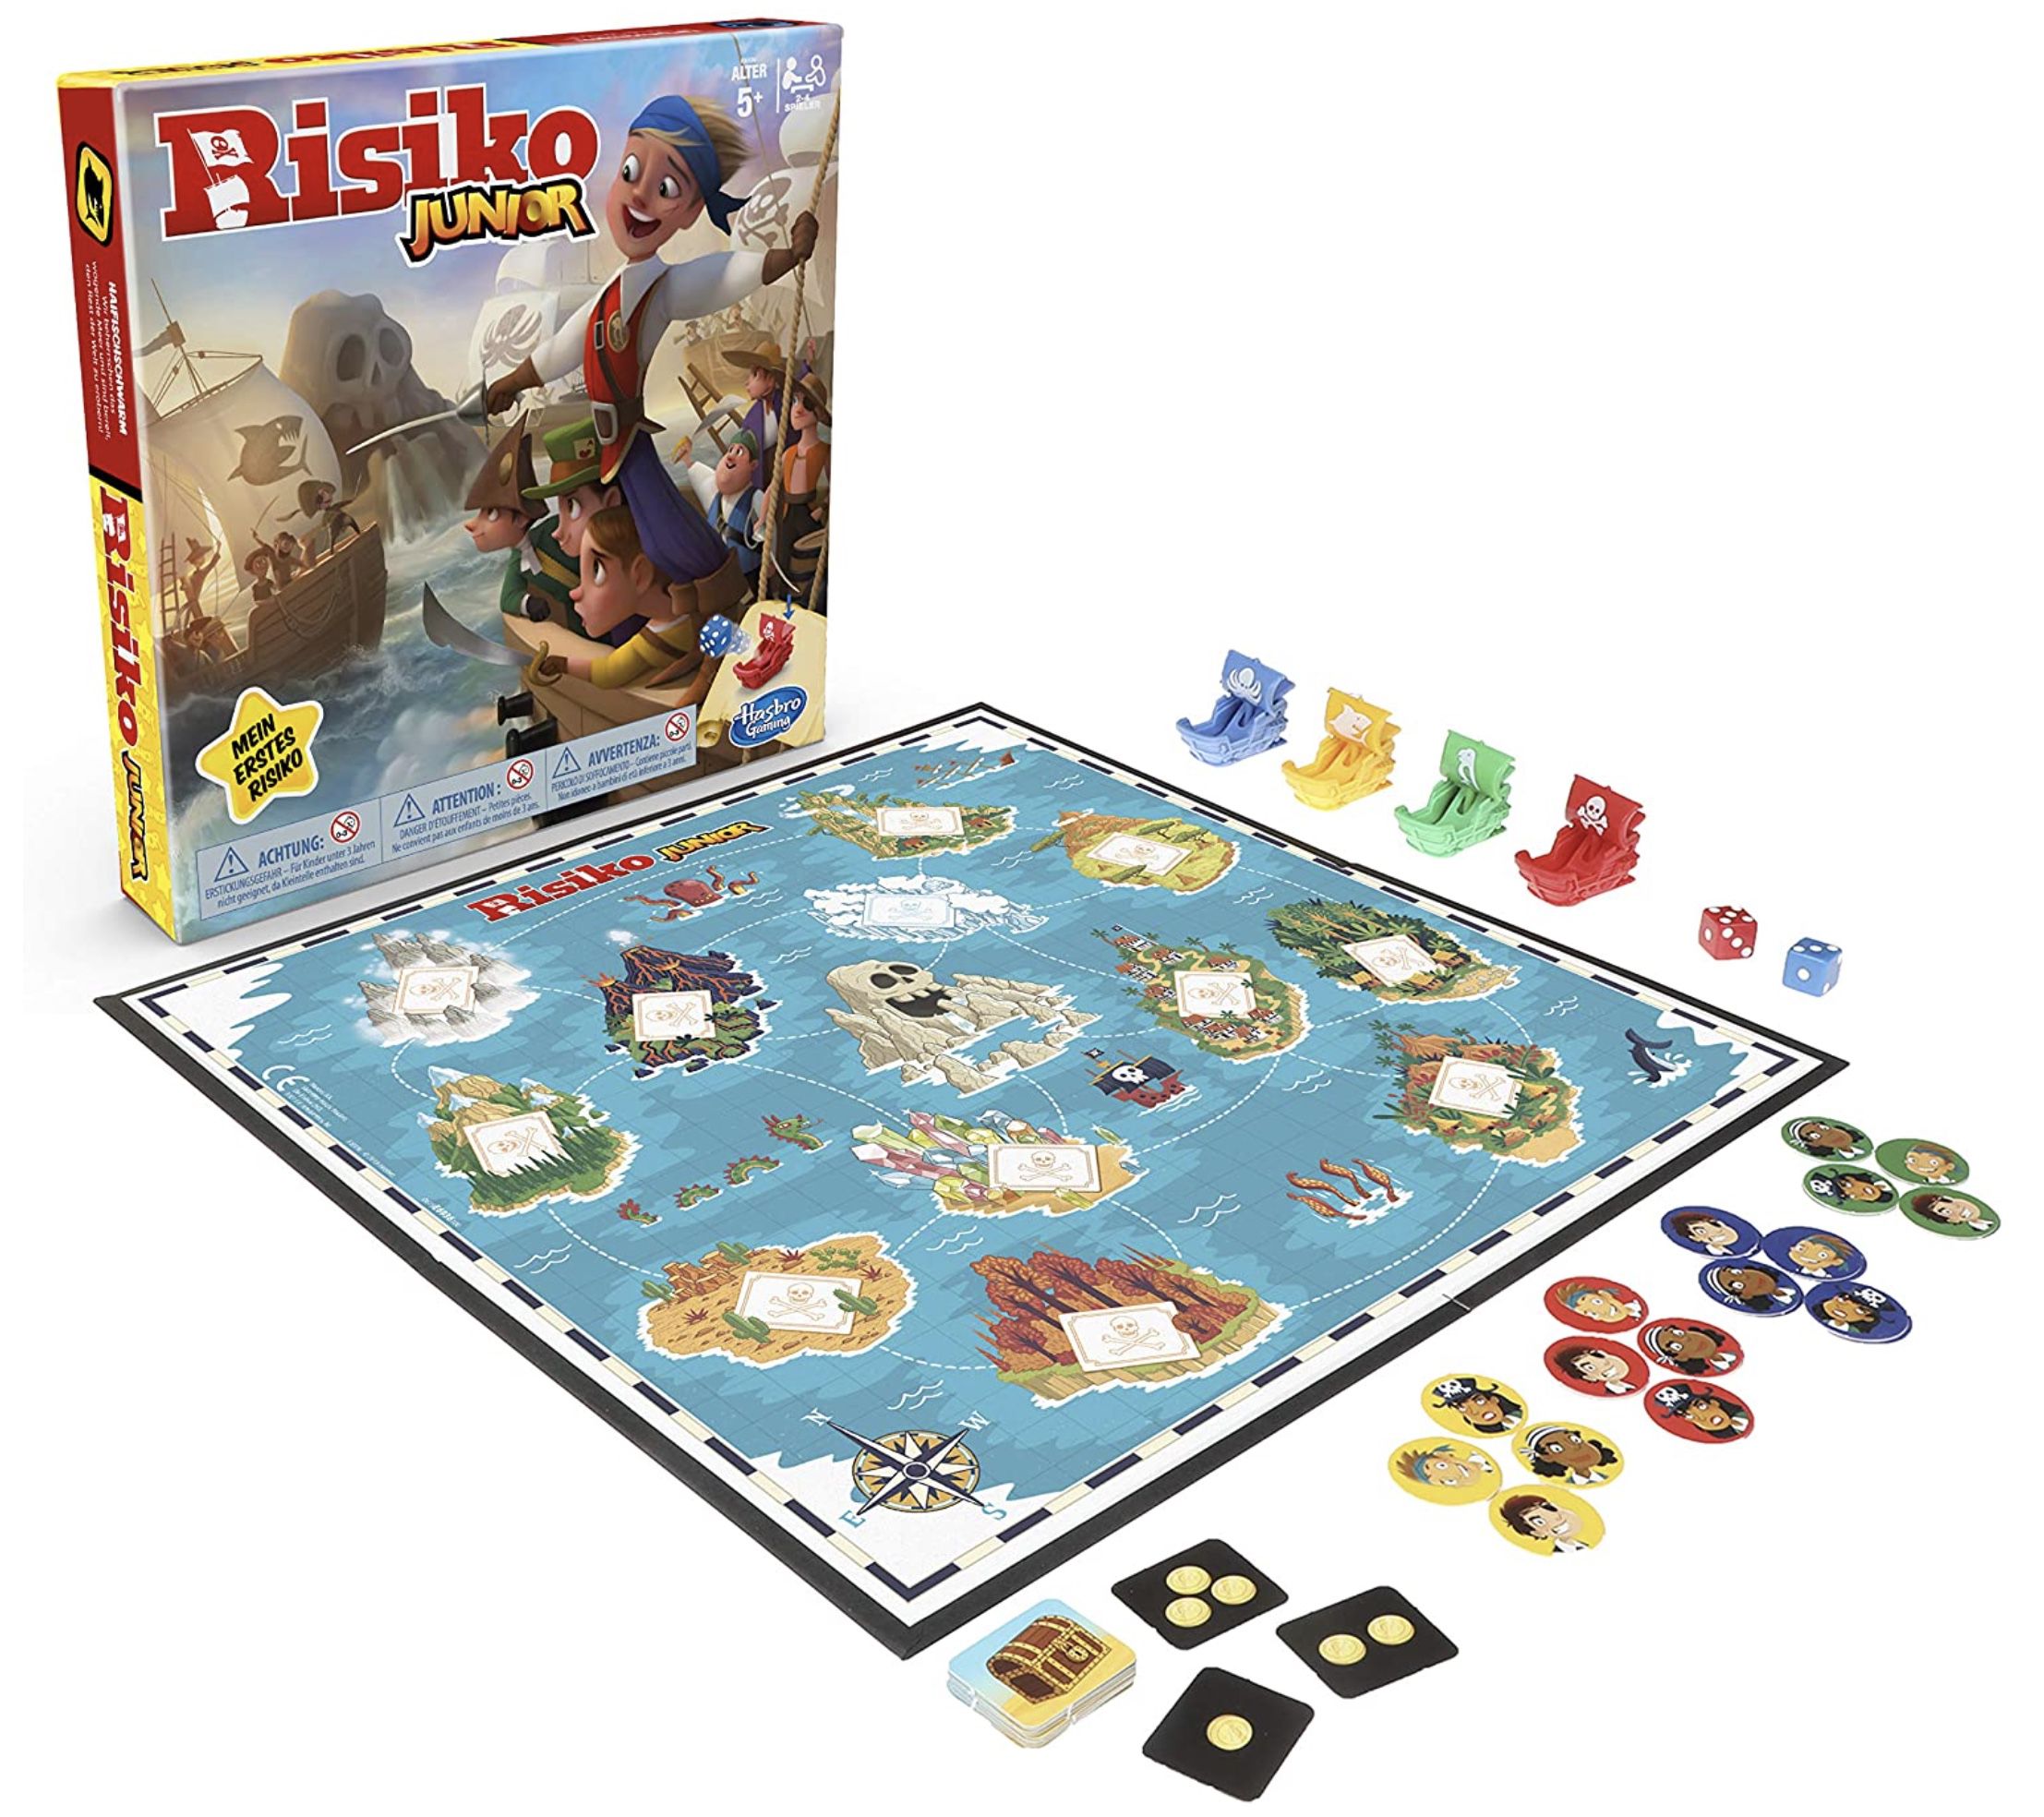 Hasbro Risiko Junior kindergerechtes Strategiespiel für 12,58€ (statt 16€)